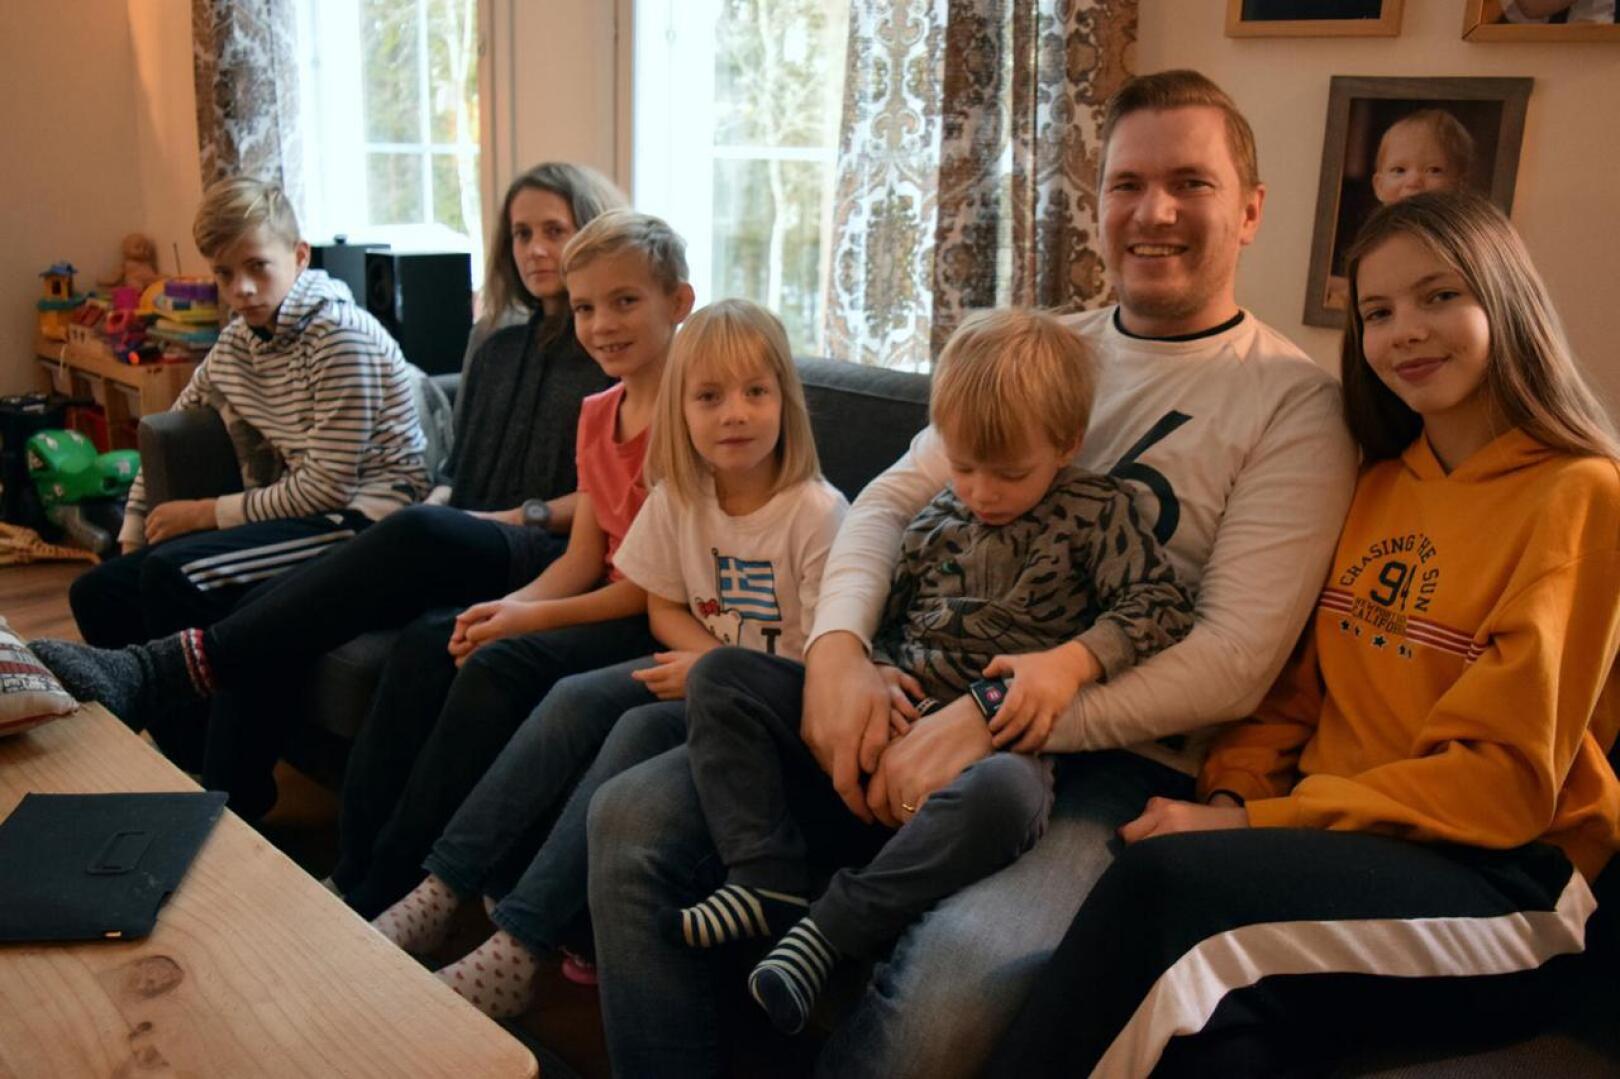 Andreas ja Helena Hjulforsin viiden lapsen perheessä rokotukset ovat kunnossa, kuten useimmissa muissakin luotolaisperheissä.